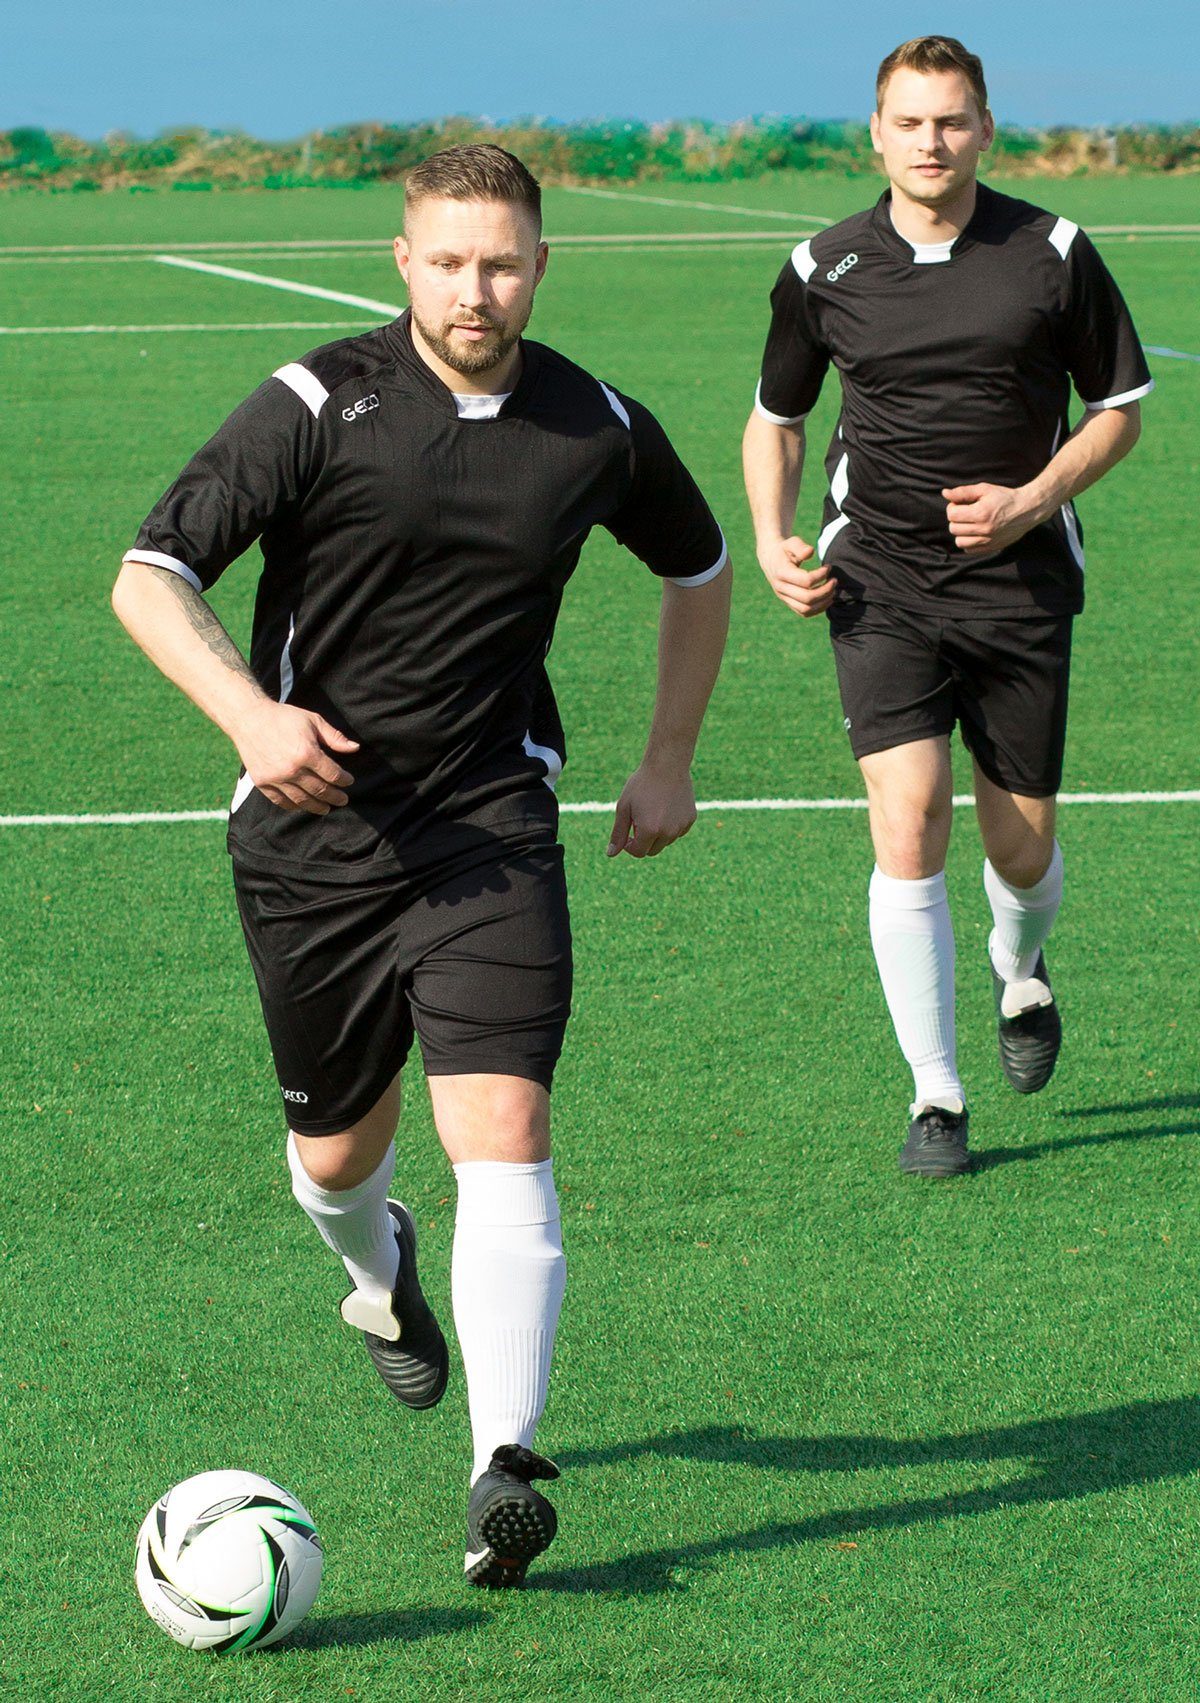 Geco Sportswear schwarz/weiß Fußball Mesheinsätze seitliche Levante Fußballtrikot kurzarm Fußballtrikot zweifarbig Trikot